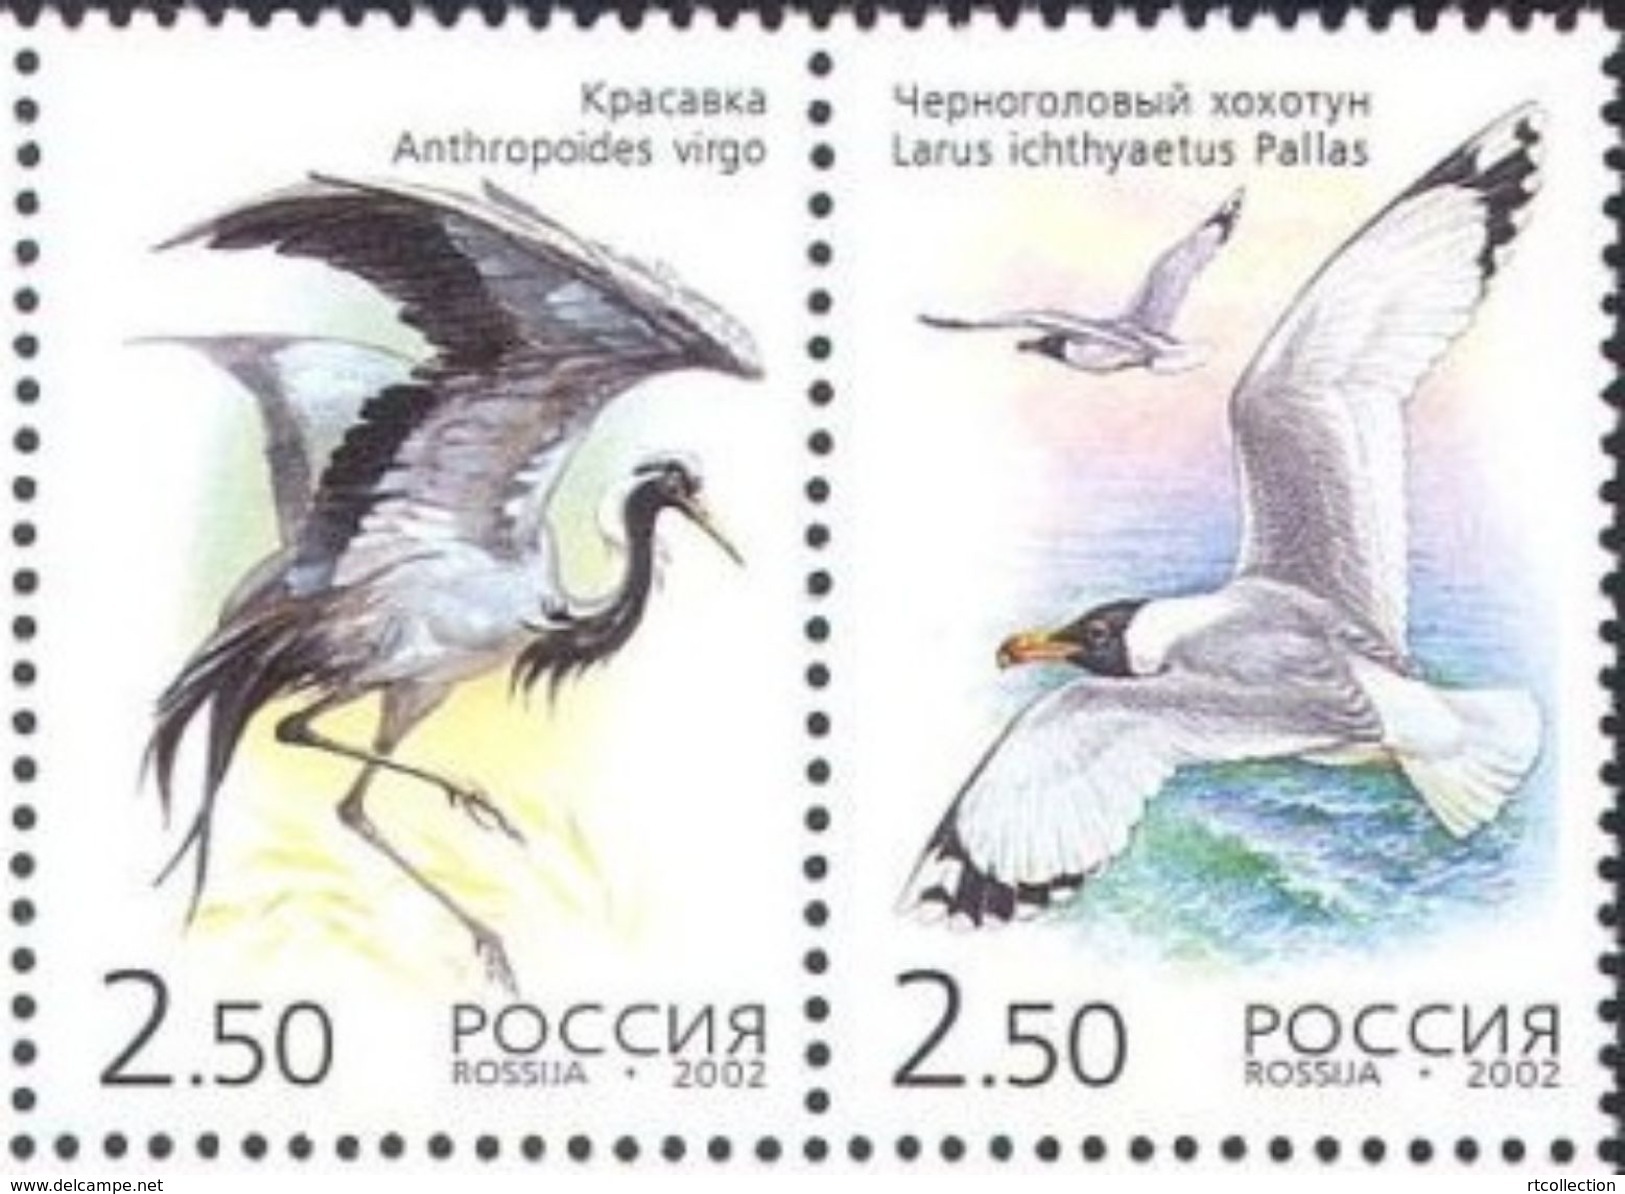 Russia 2002 Kazakhstan Joint Issue Birds Crane Cranes Gull Bird Animal Fauna Pair Stamps MNH Mi 1008-1009 Scott 6709 - Kranichvögel